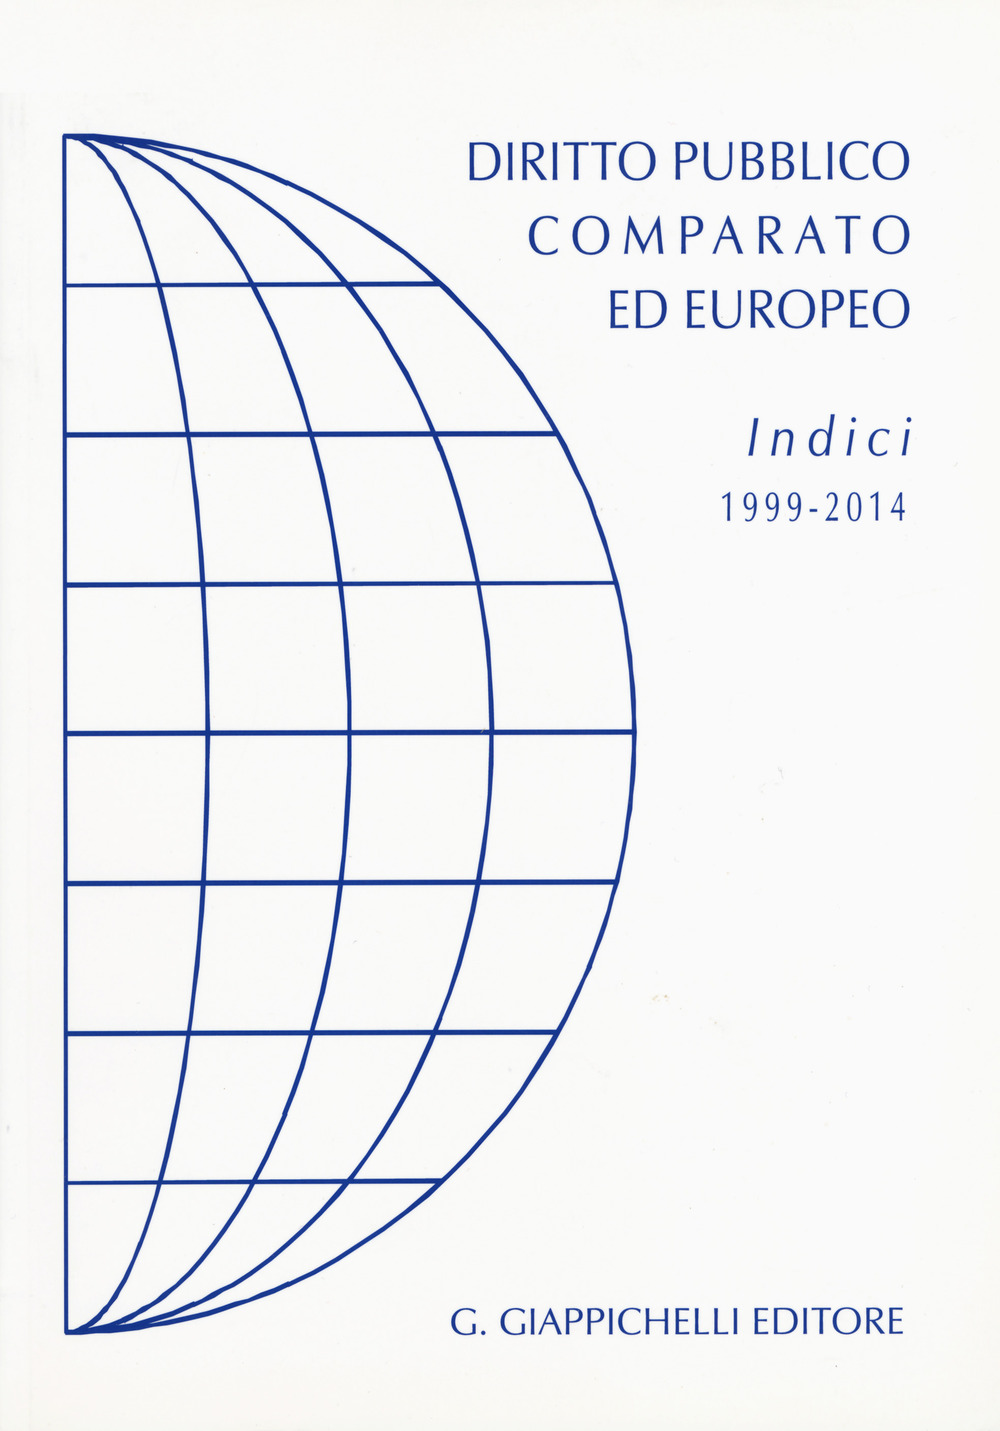 Diritto pubblico comparato ed europeo. Indici 1999-2014